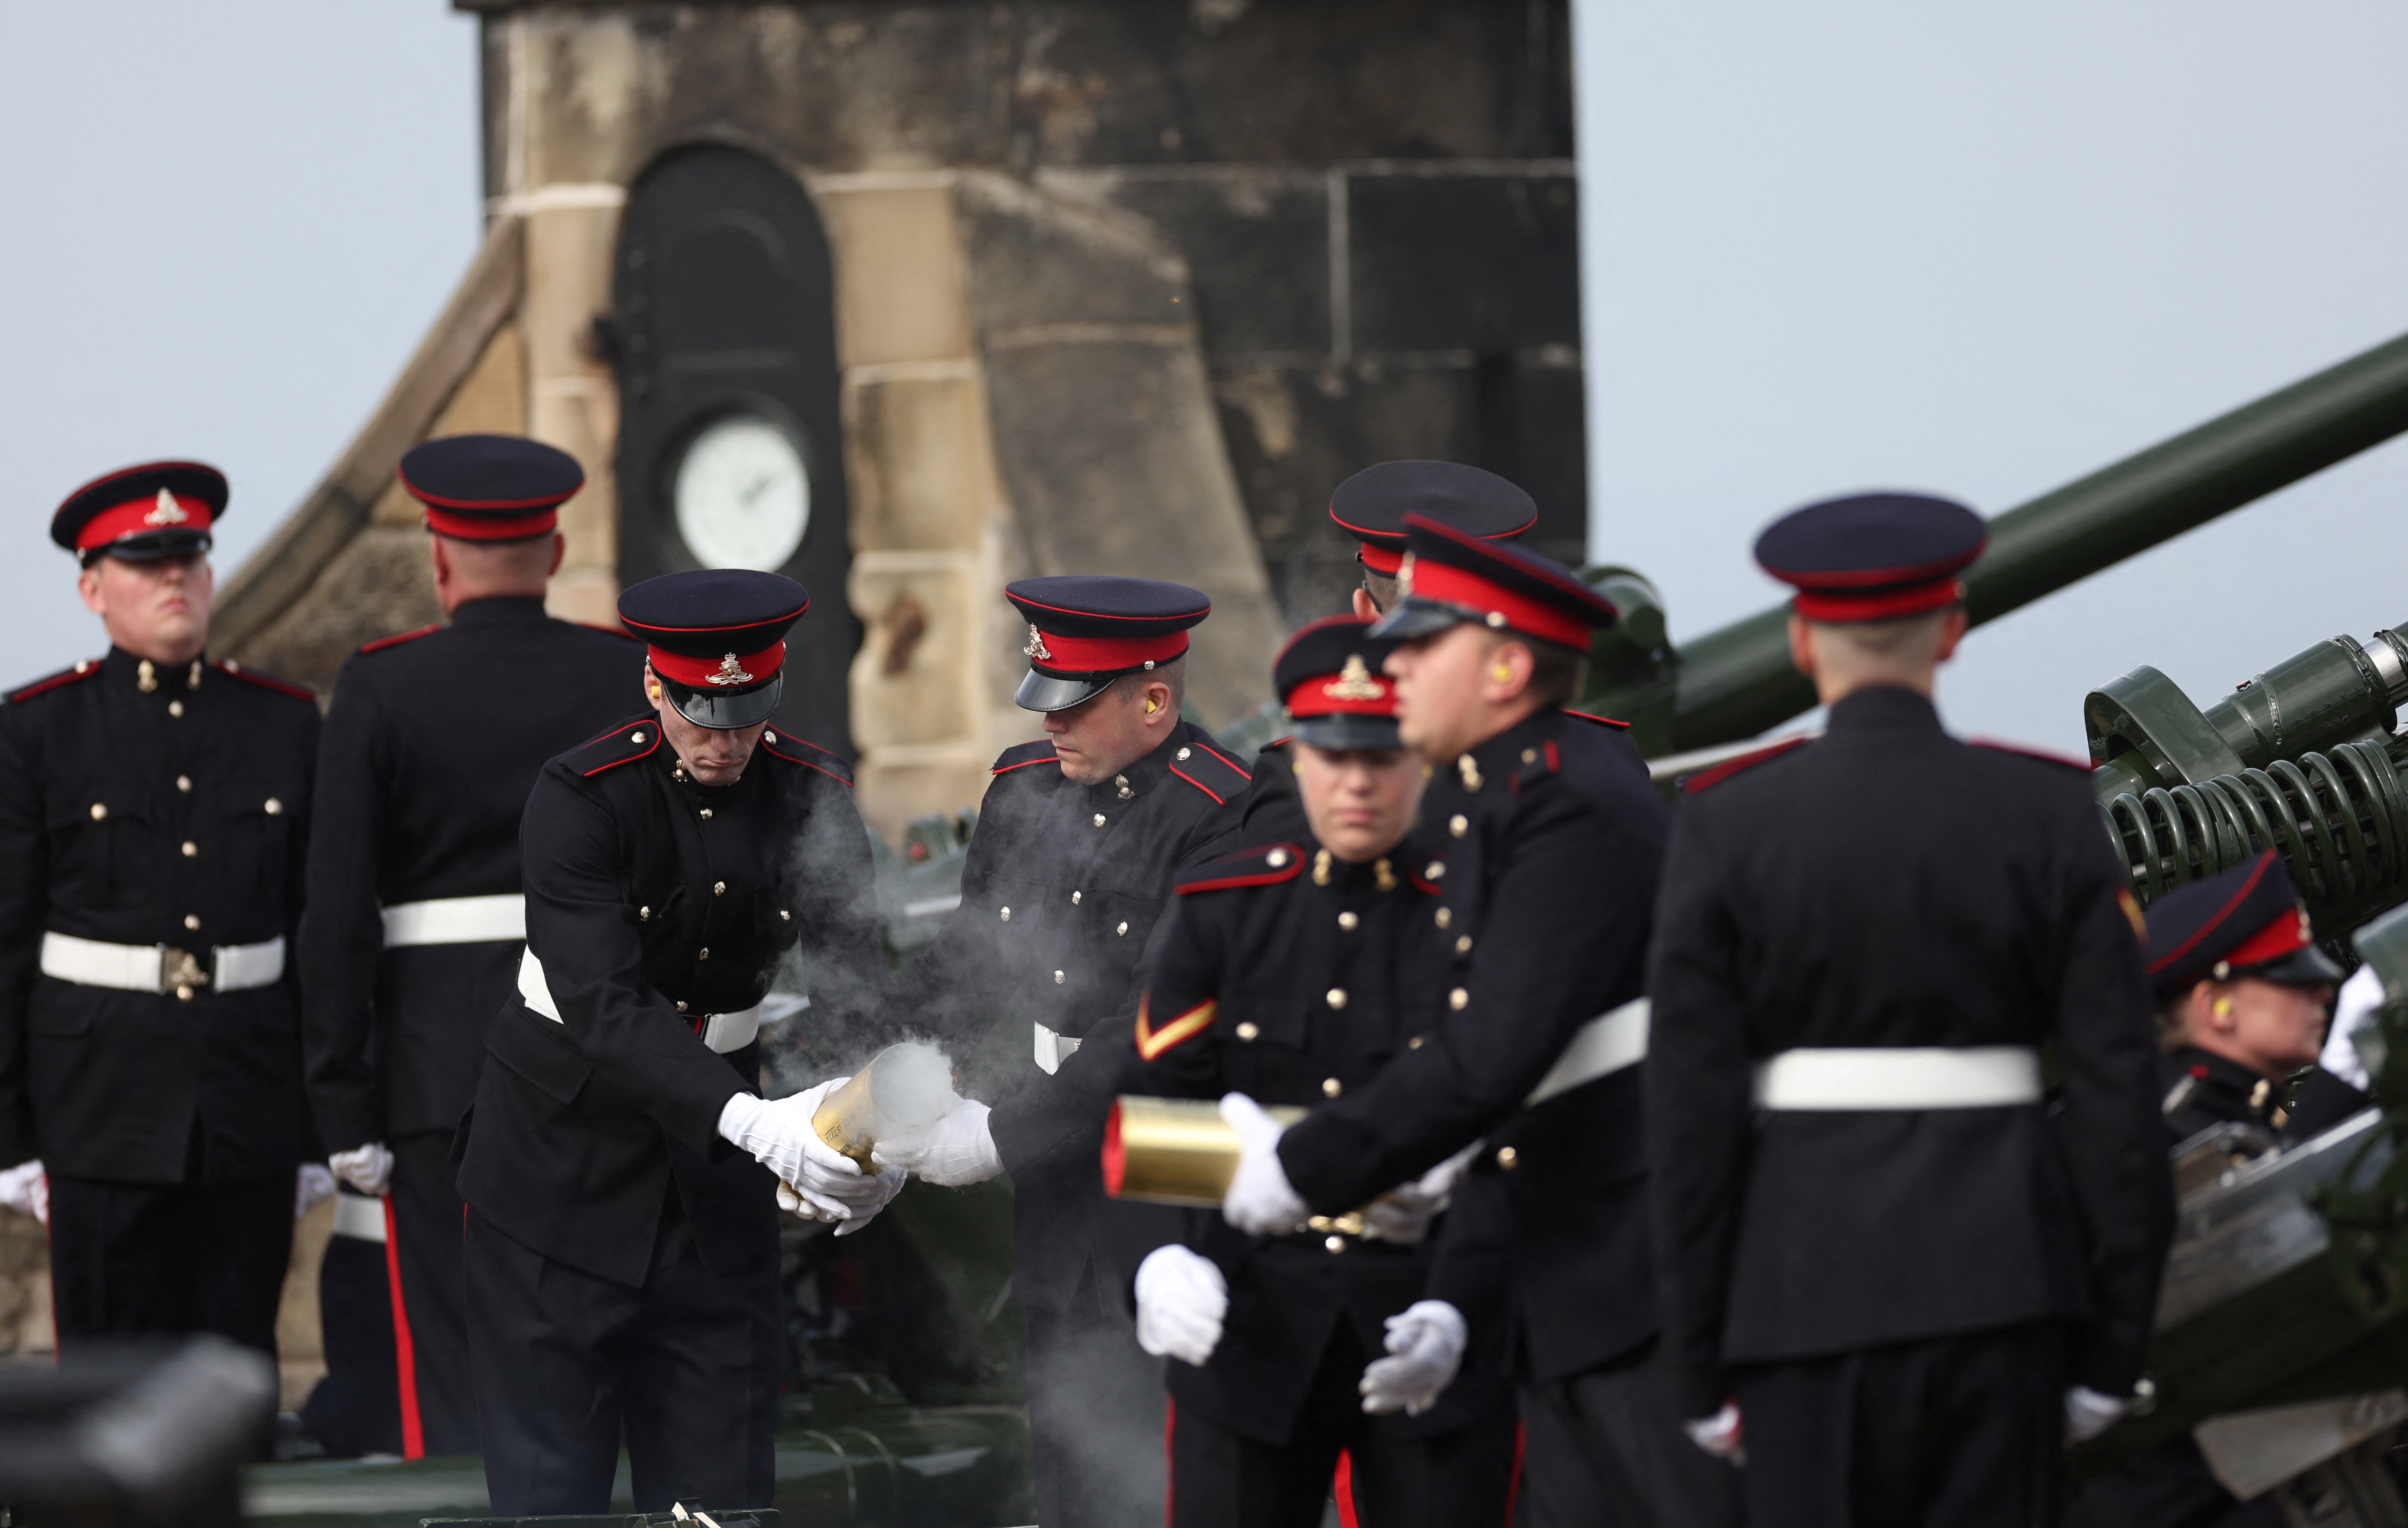 Se dispararon 96 salvas de cañón, uno por cada año de la reina (REUTERS/Carl Recine)